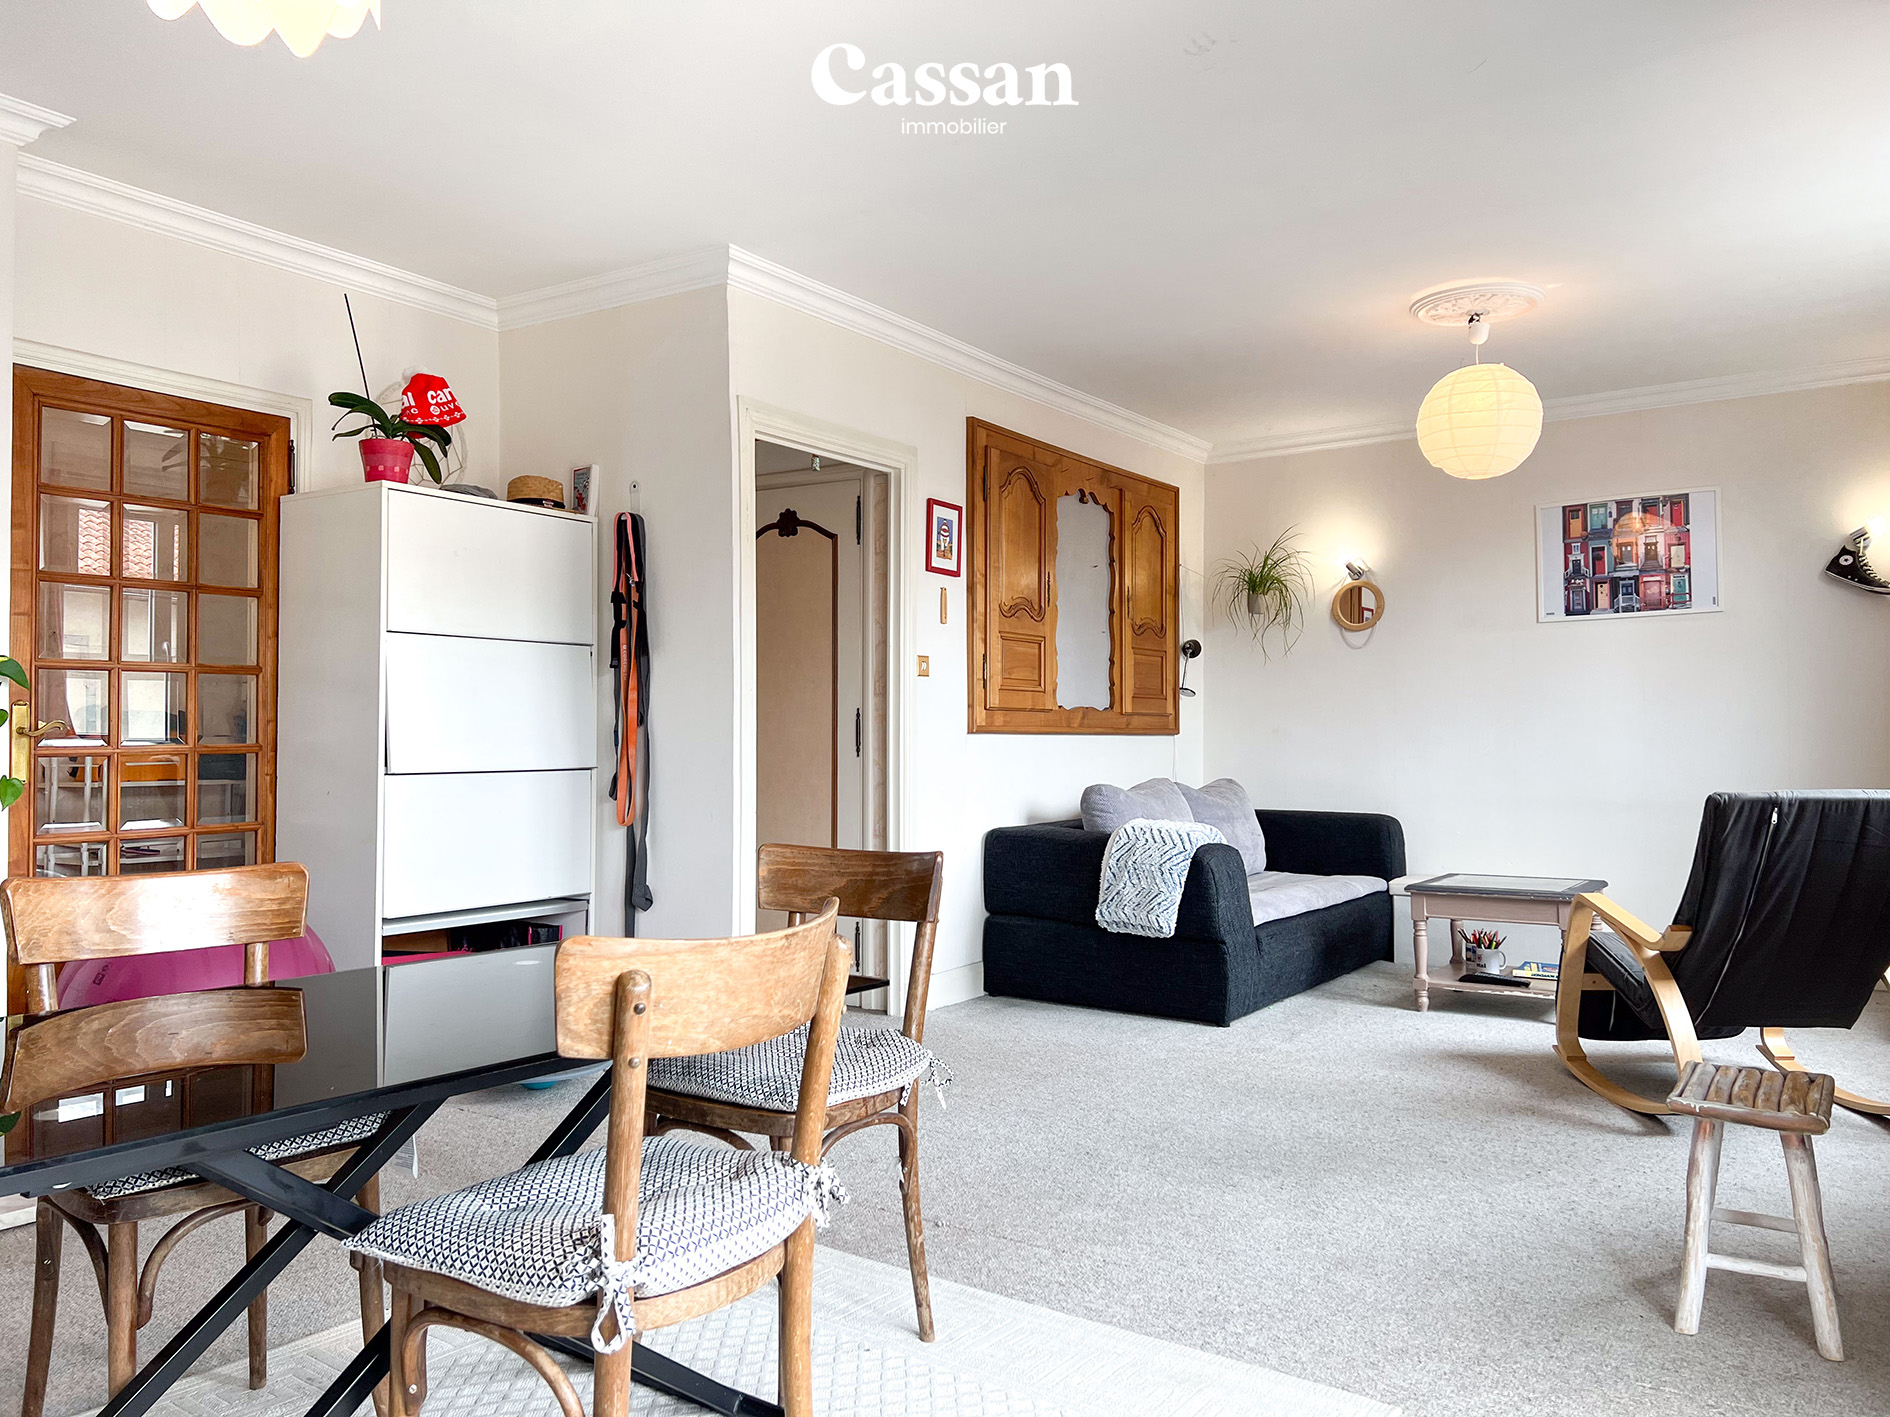 Séjour appartement à vendre Aurillac Cassan immobilier